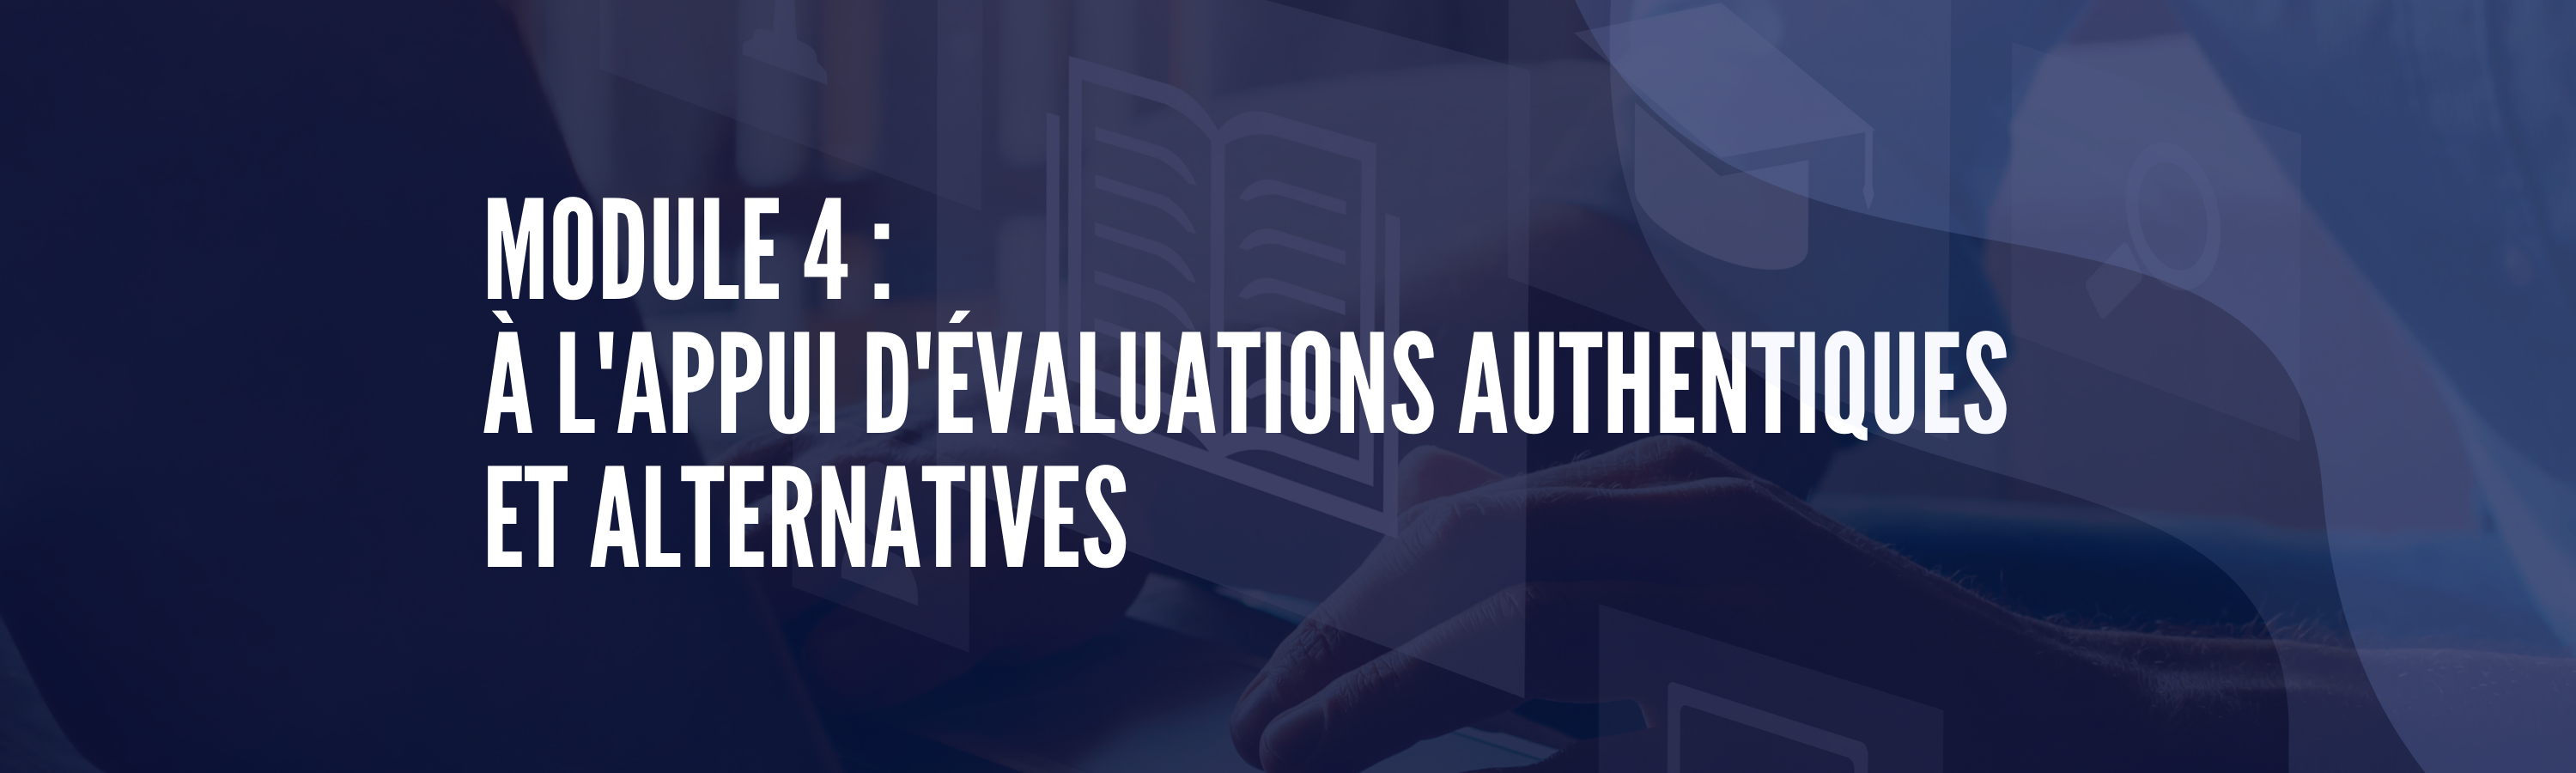 module 4 - à l'appui d'évaluations authentique et alternatives